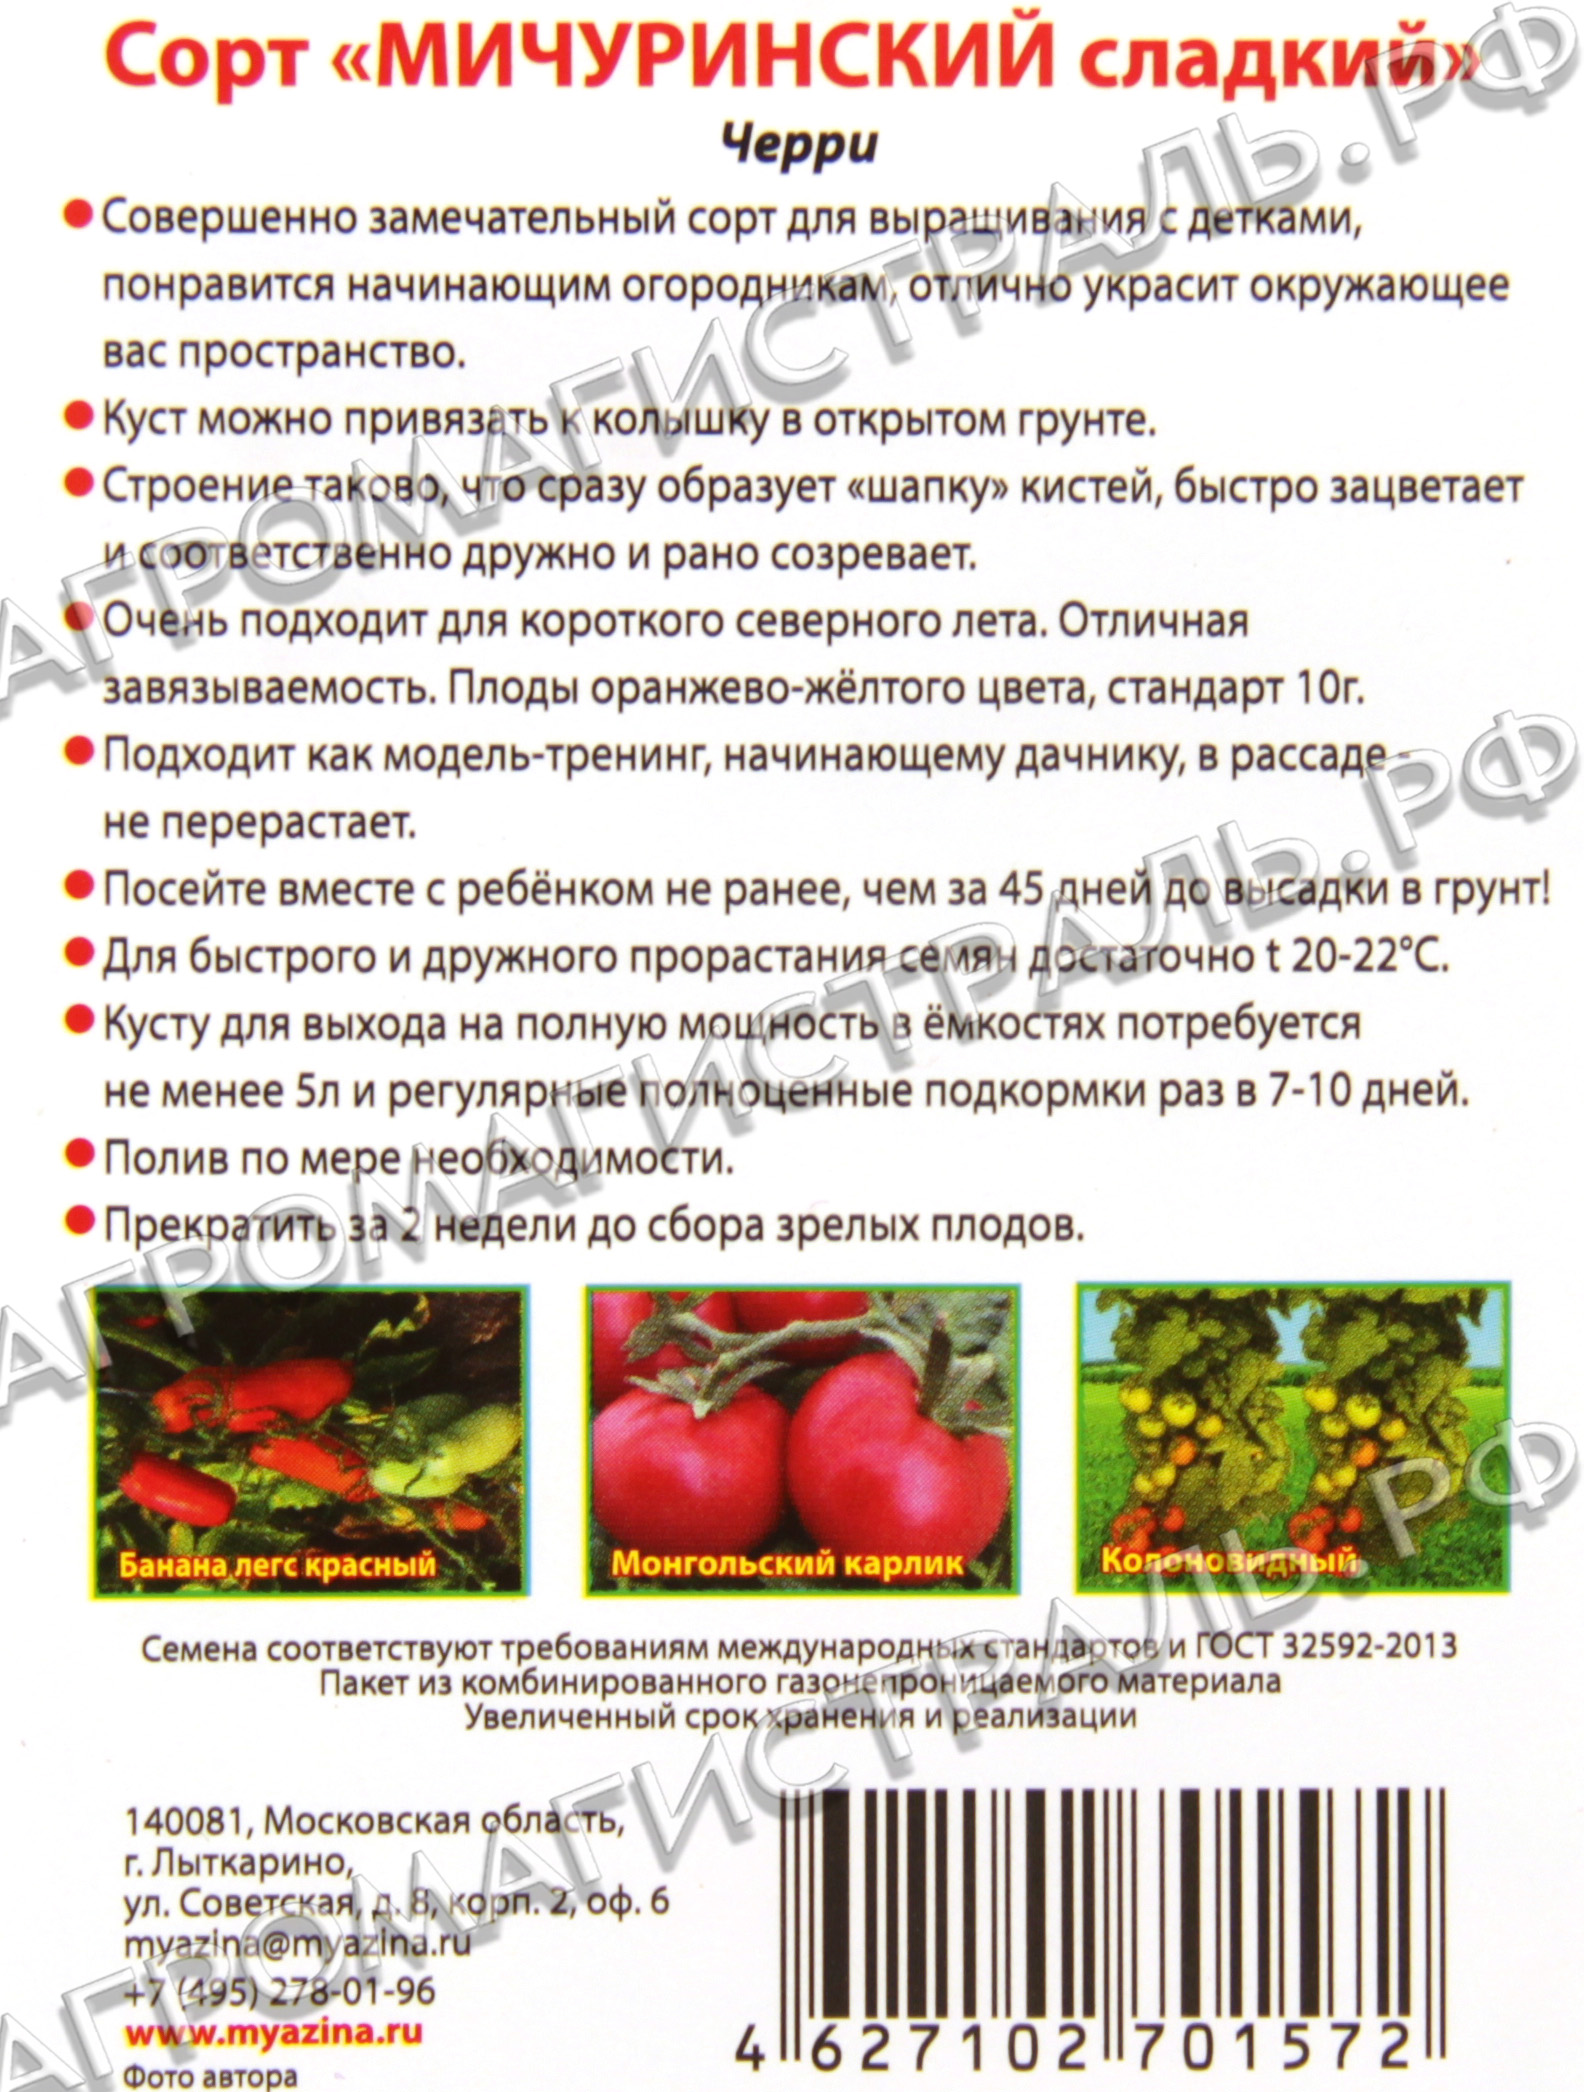 Томат шансон f1: описание сорта, отзывы об урожайности помидоров, характеристика куста